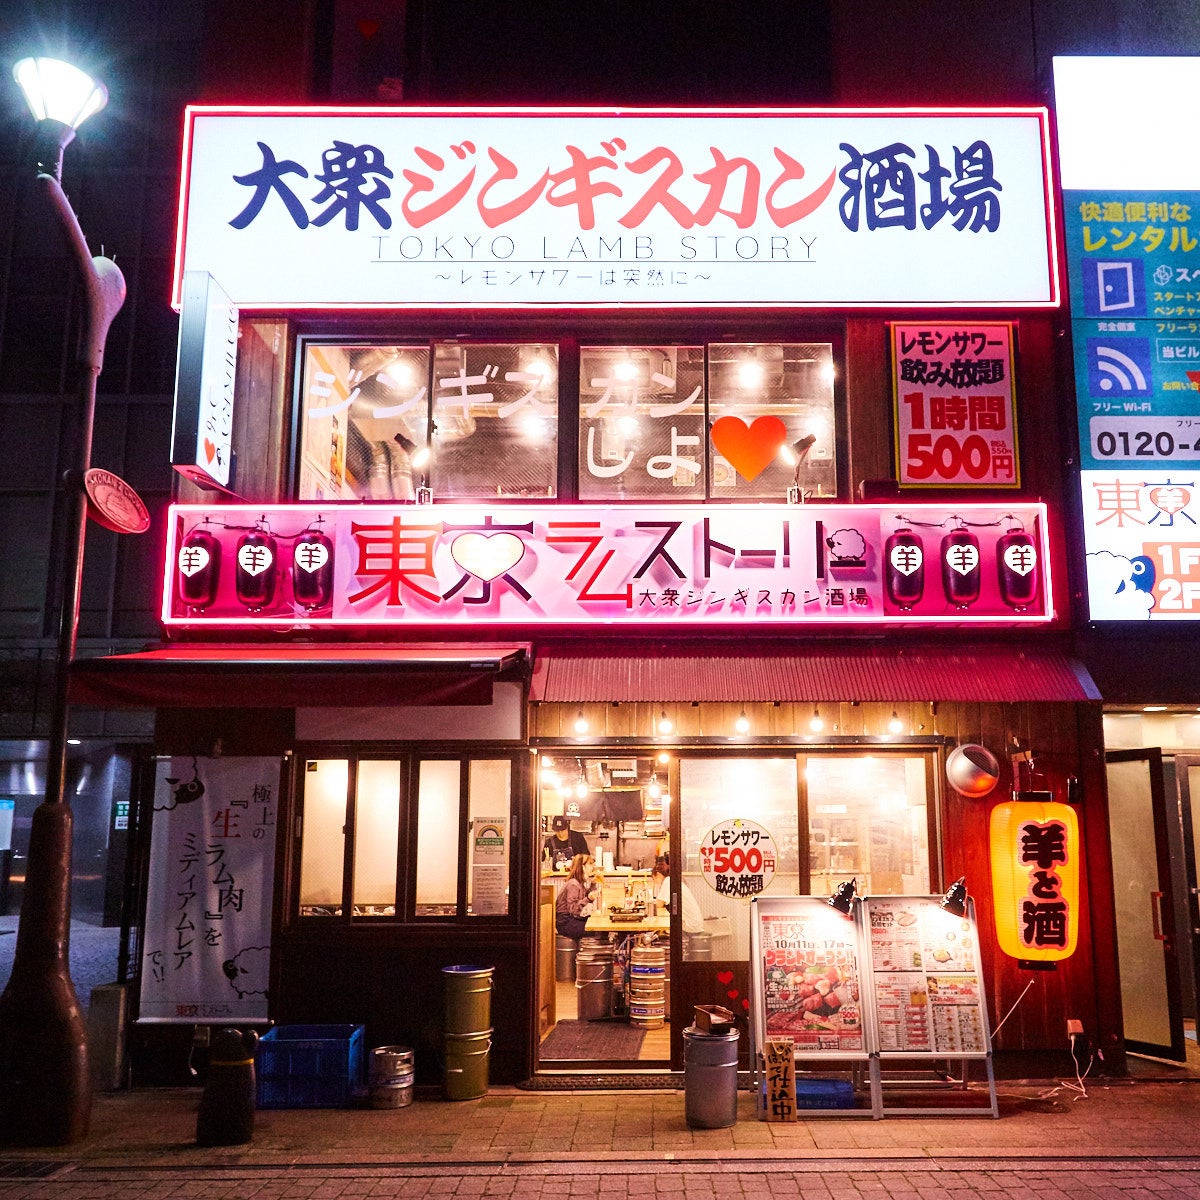 大衆ジンギスカン酒場「東京ラムストーリー」品川店　オープン1周年記念キャンペーン